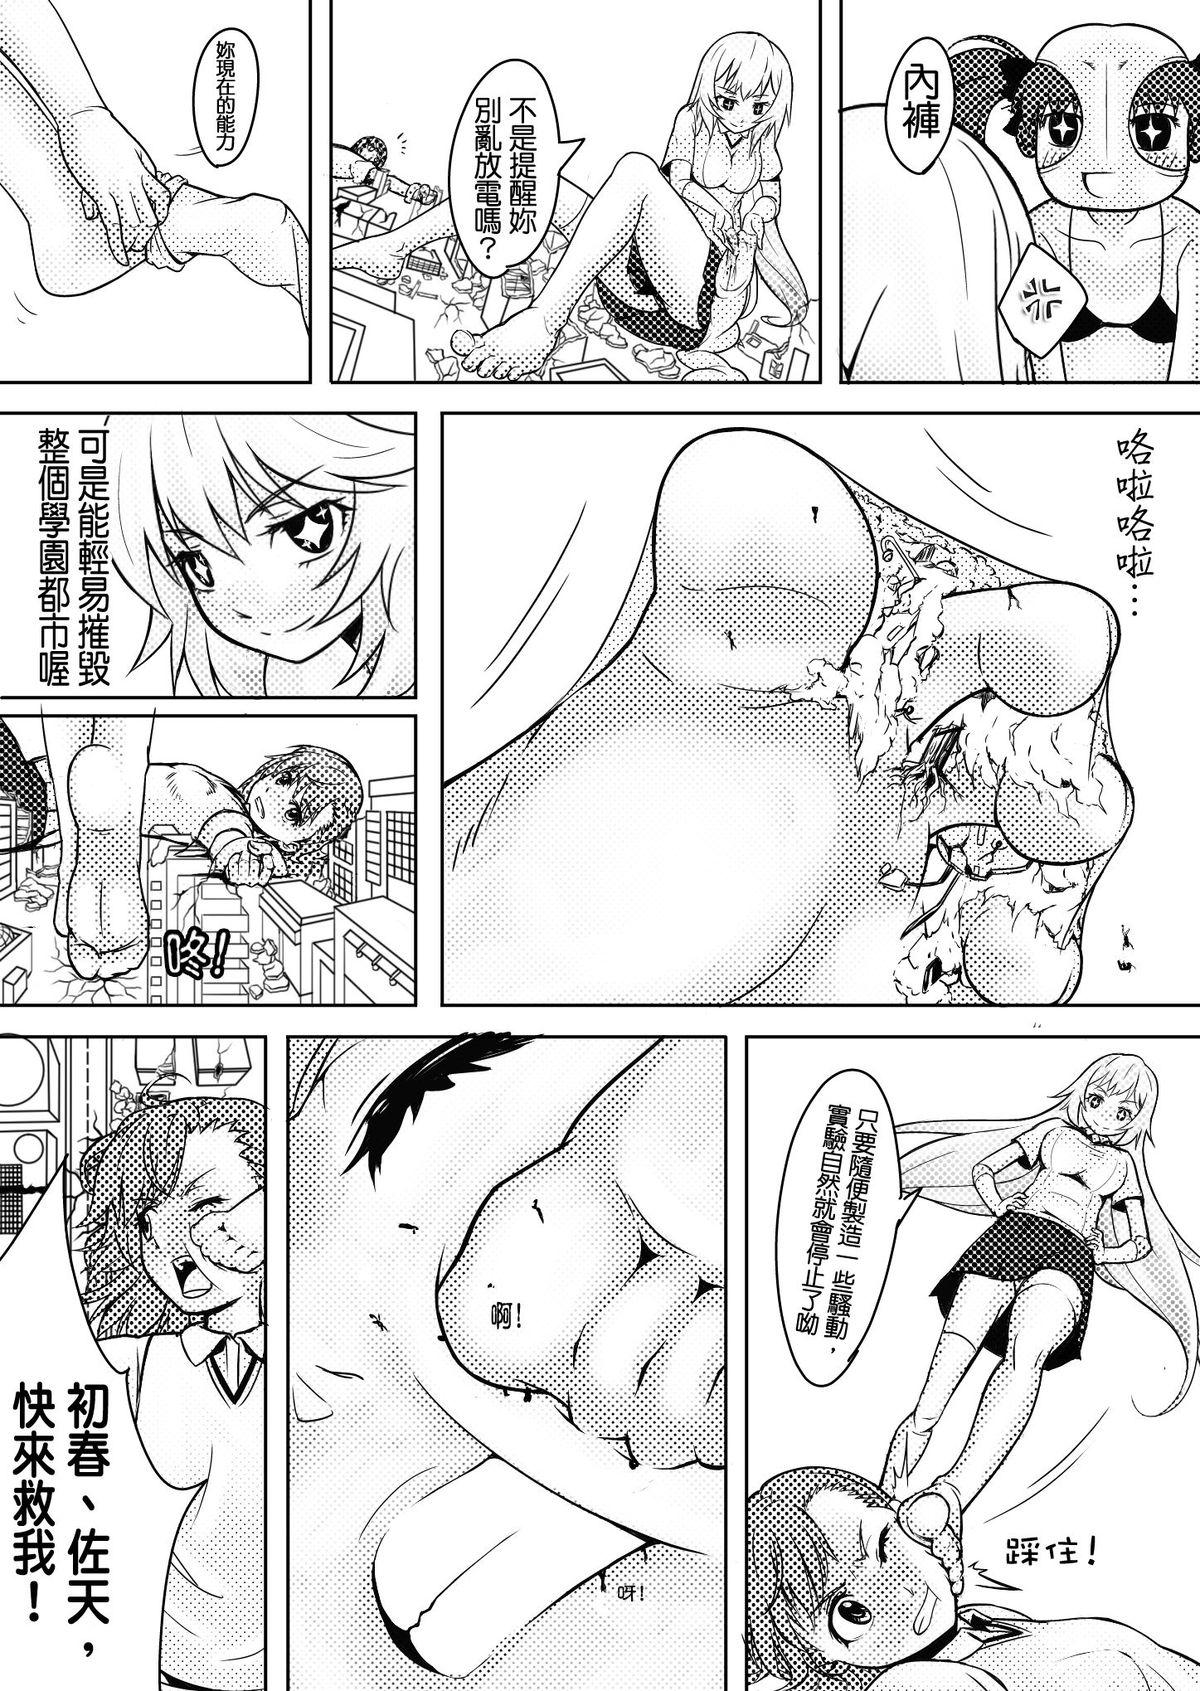 Peeing Toaru Shingeki no S Railgun - Toaru kagaku no railgun Punish - Page 7